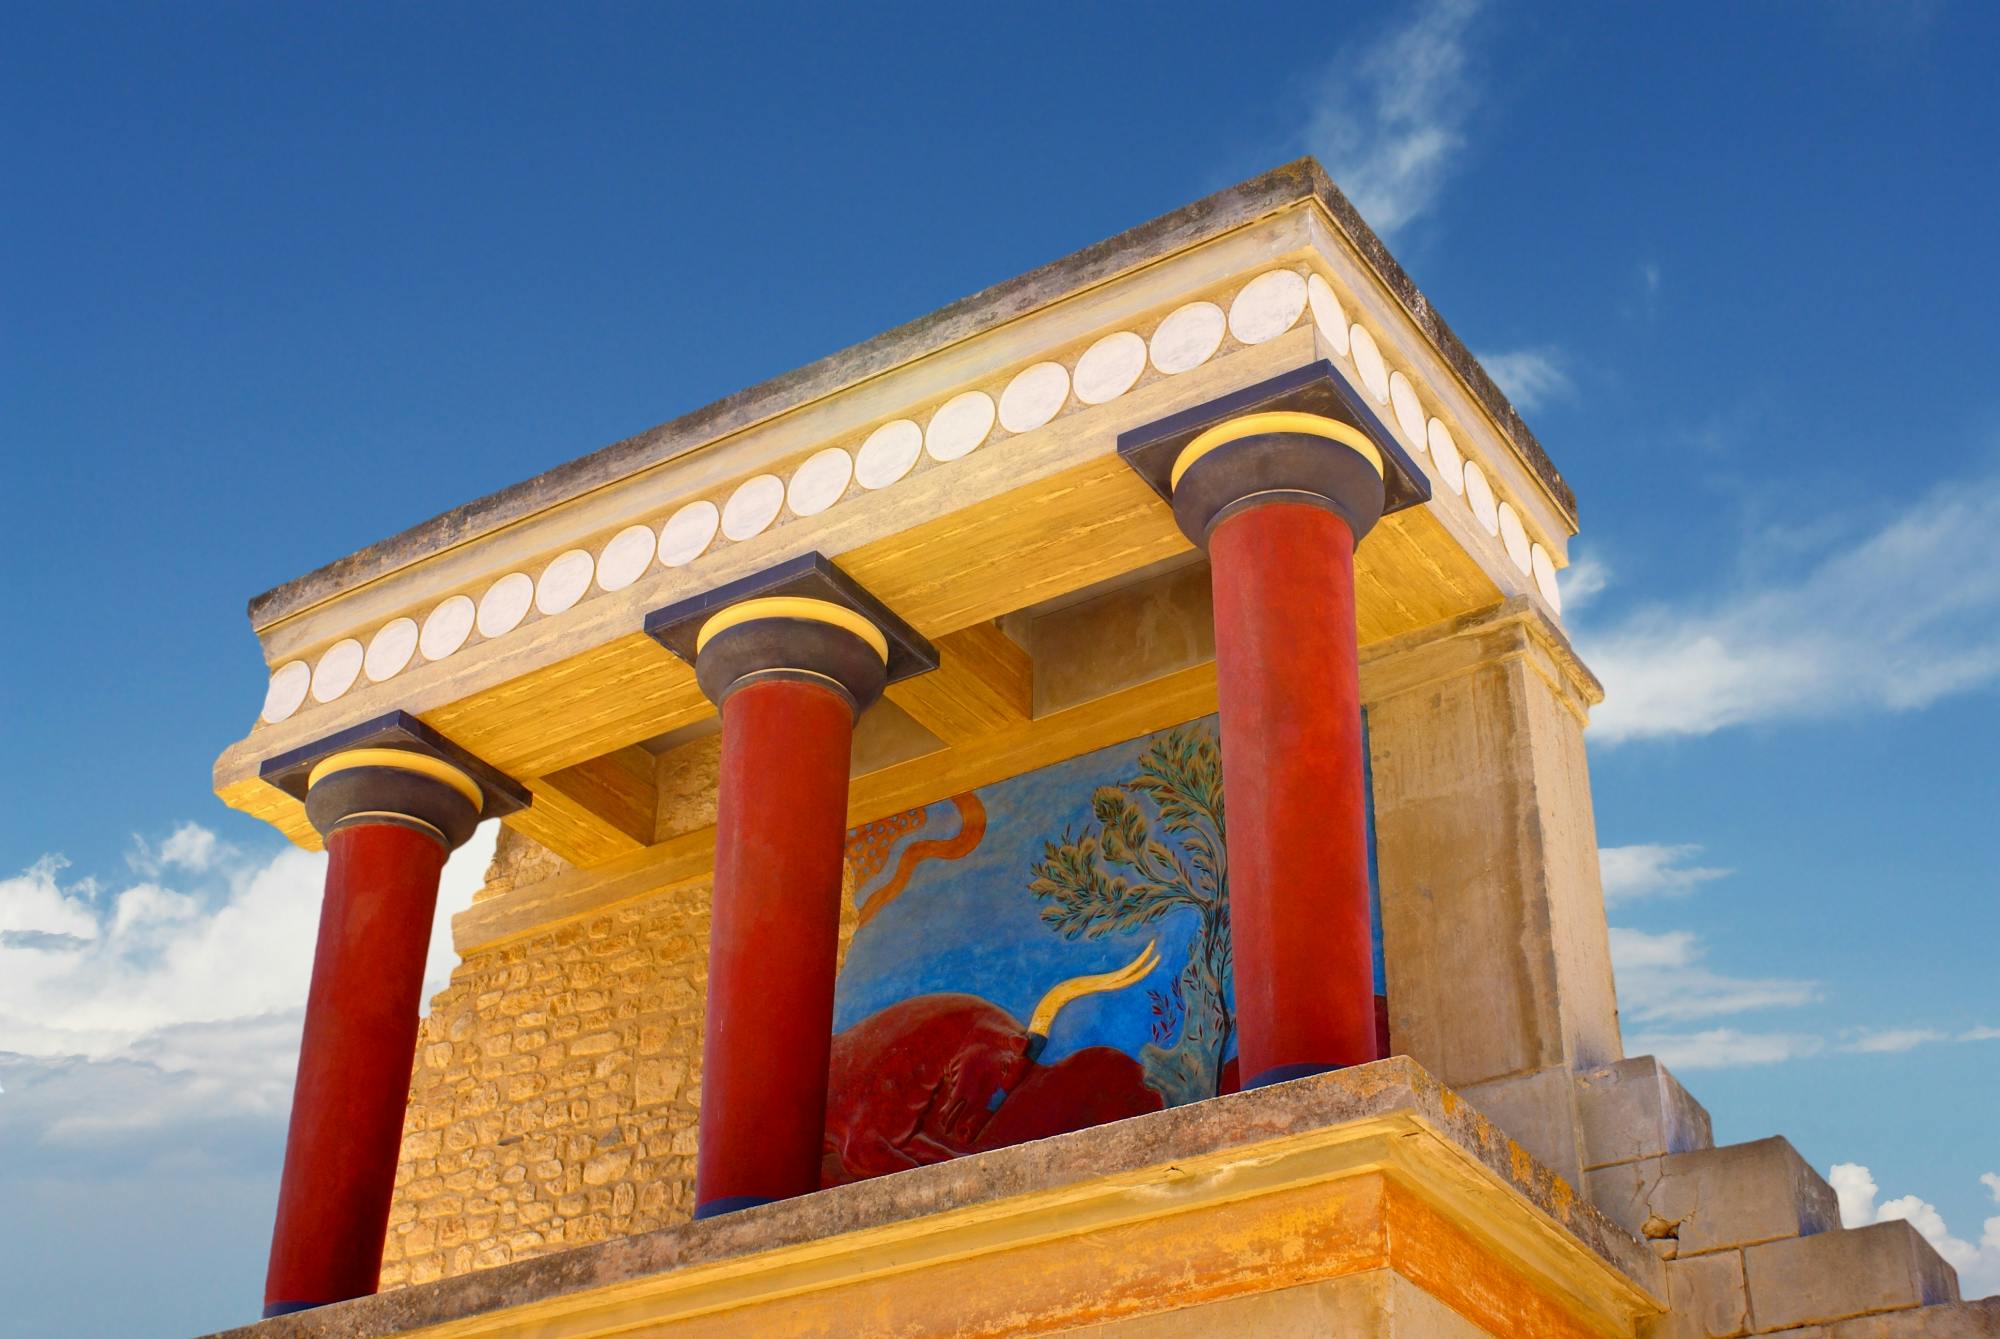 Eintrittskarten für die archäologische Stätte Knossos